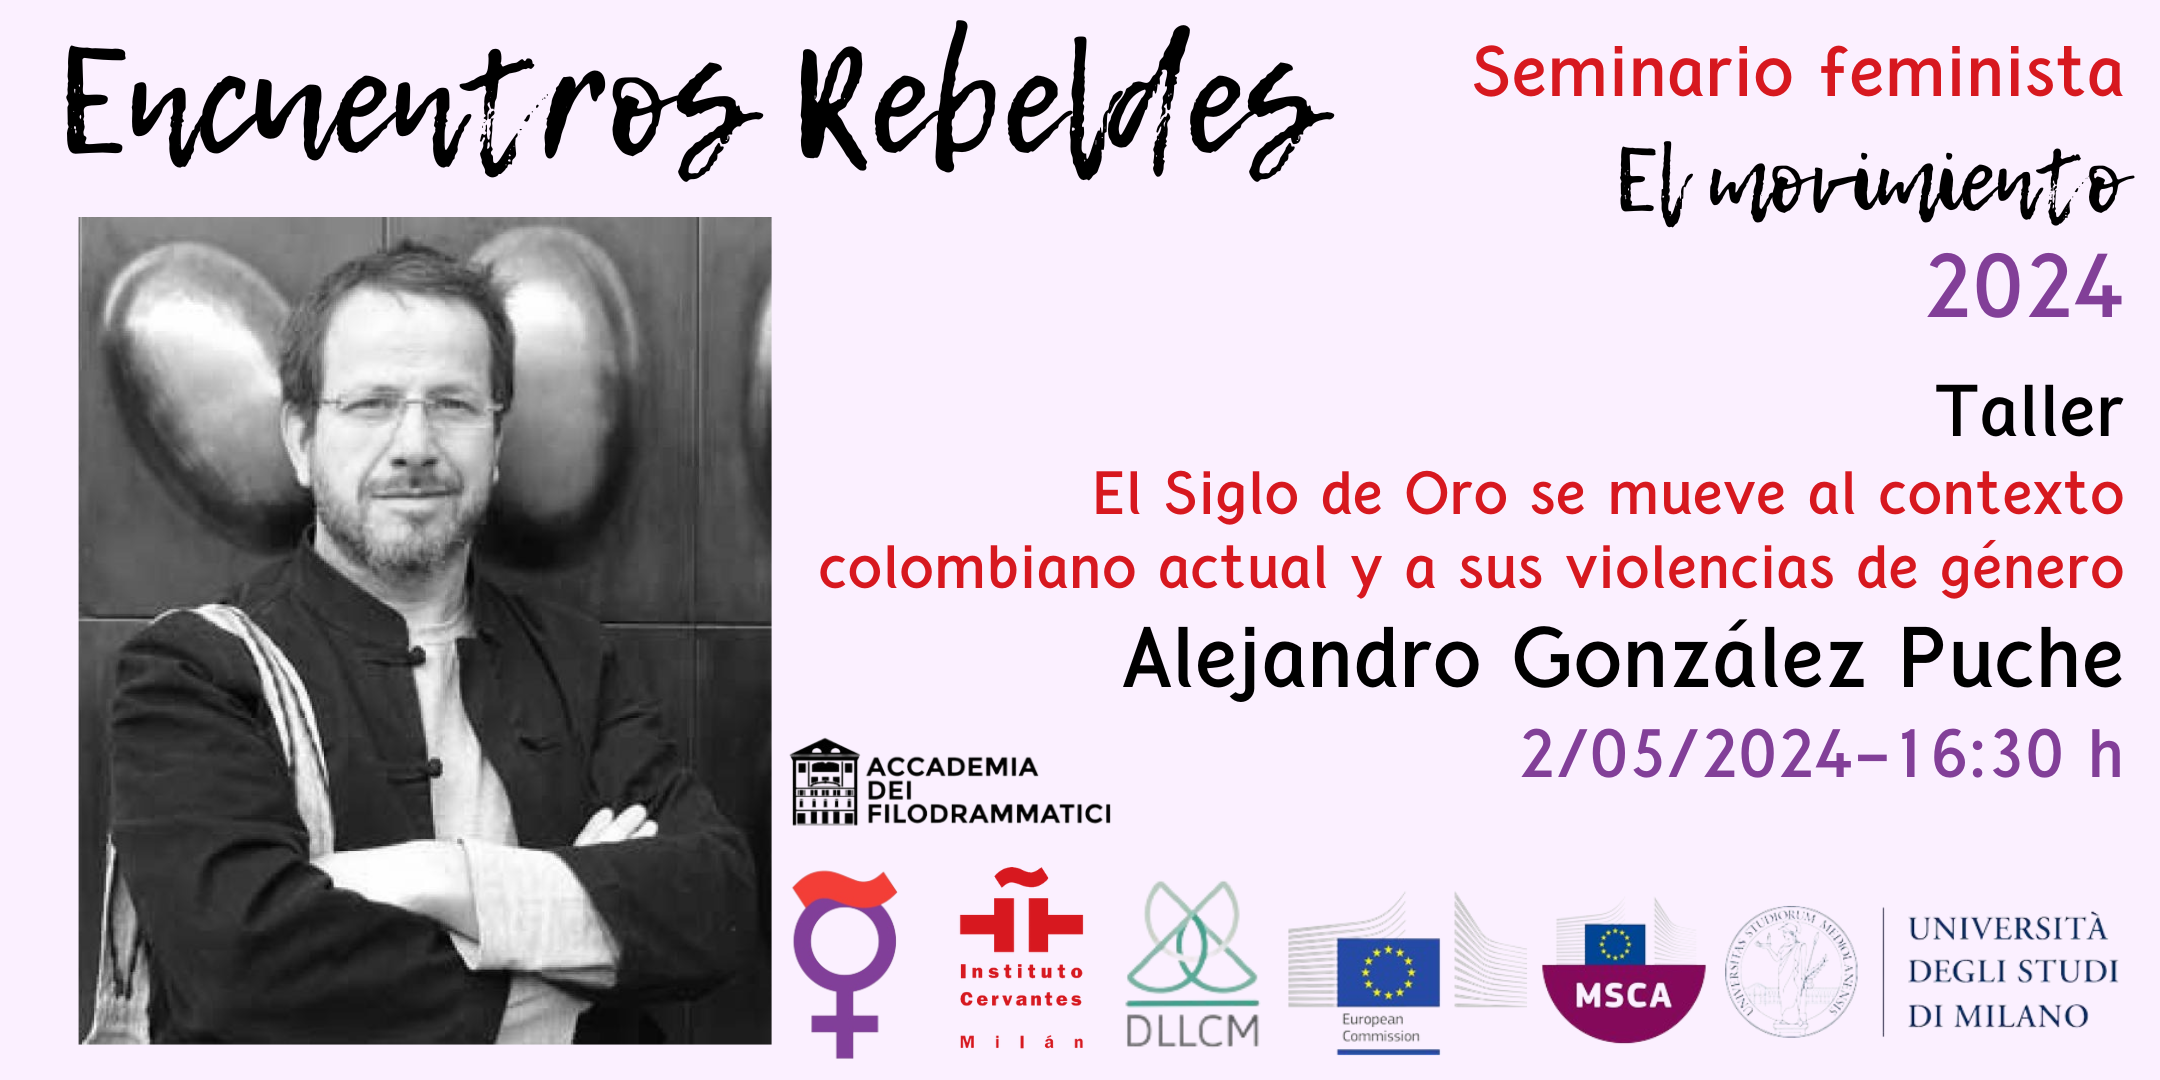 El Siglo de Oro se mueve al contexto colombiano actual y a sus violencias de género